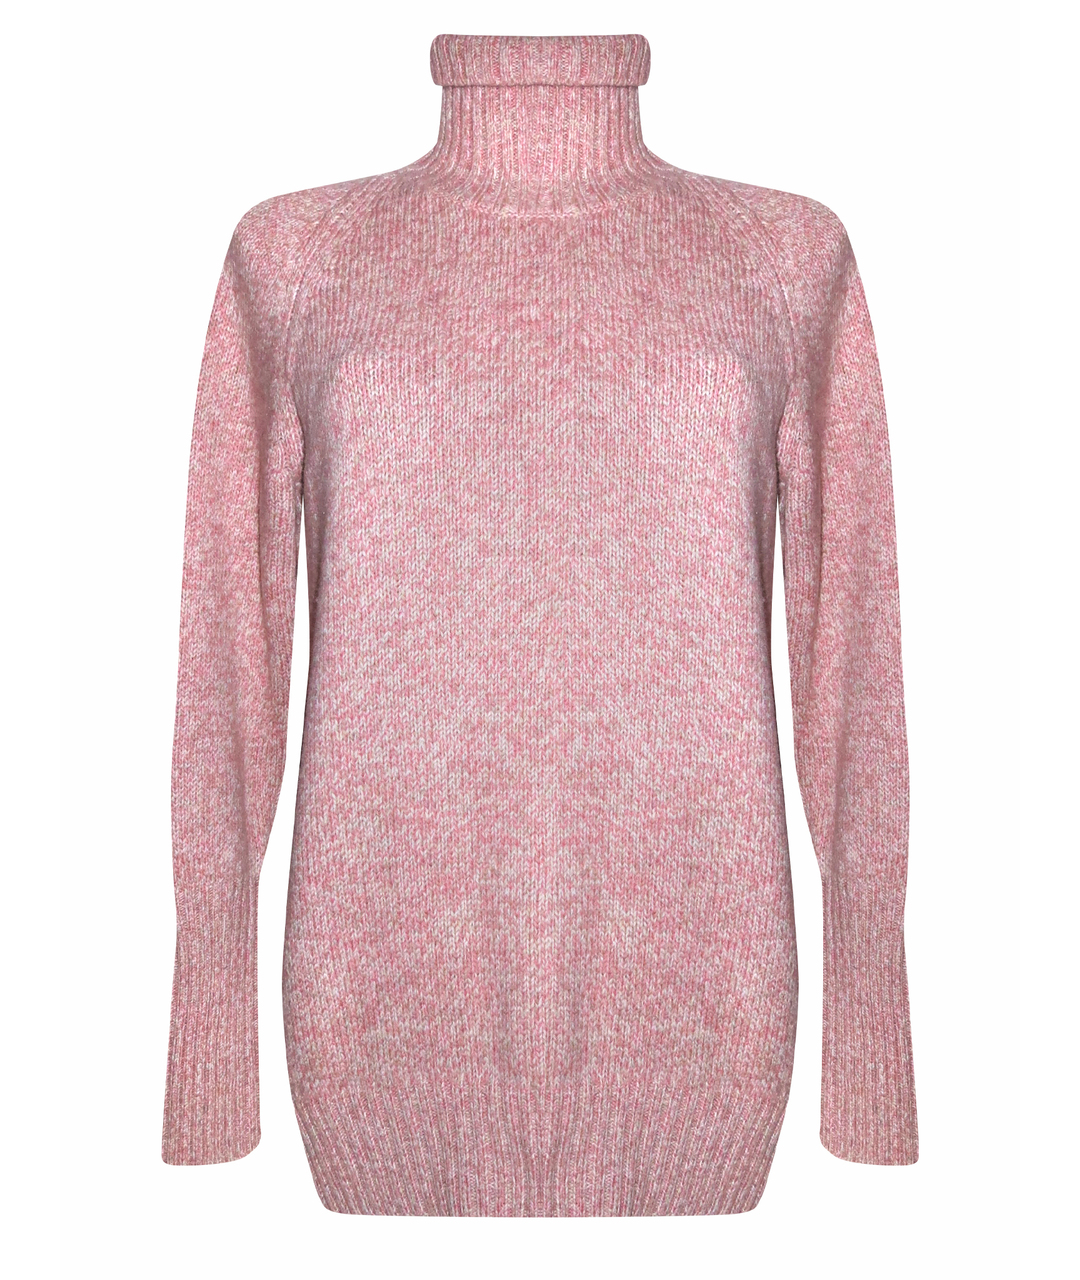 RE VERA Розовый кашемировый джемпер / свитер, фото 1